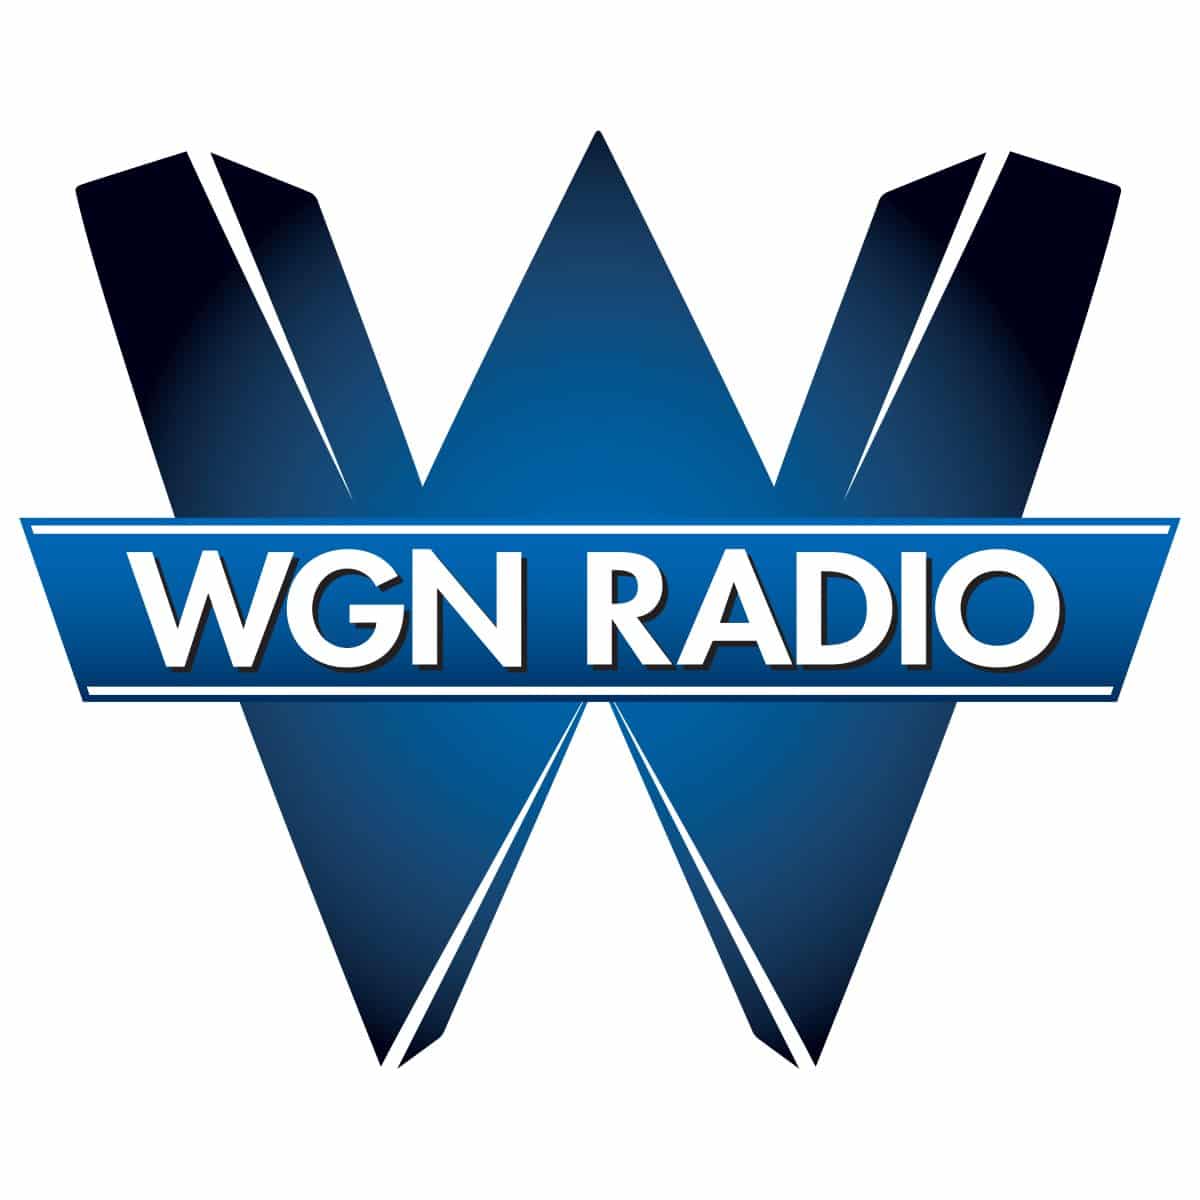 Wgn radio logo on a white background with a stock market theme.